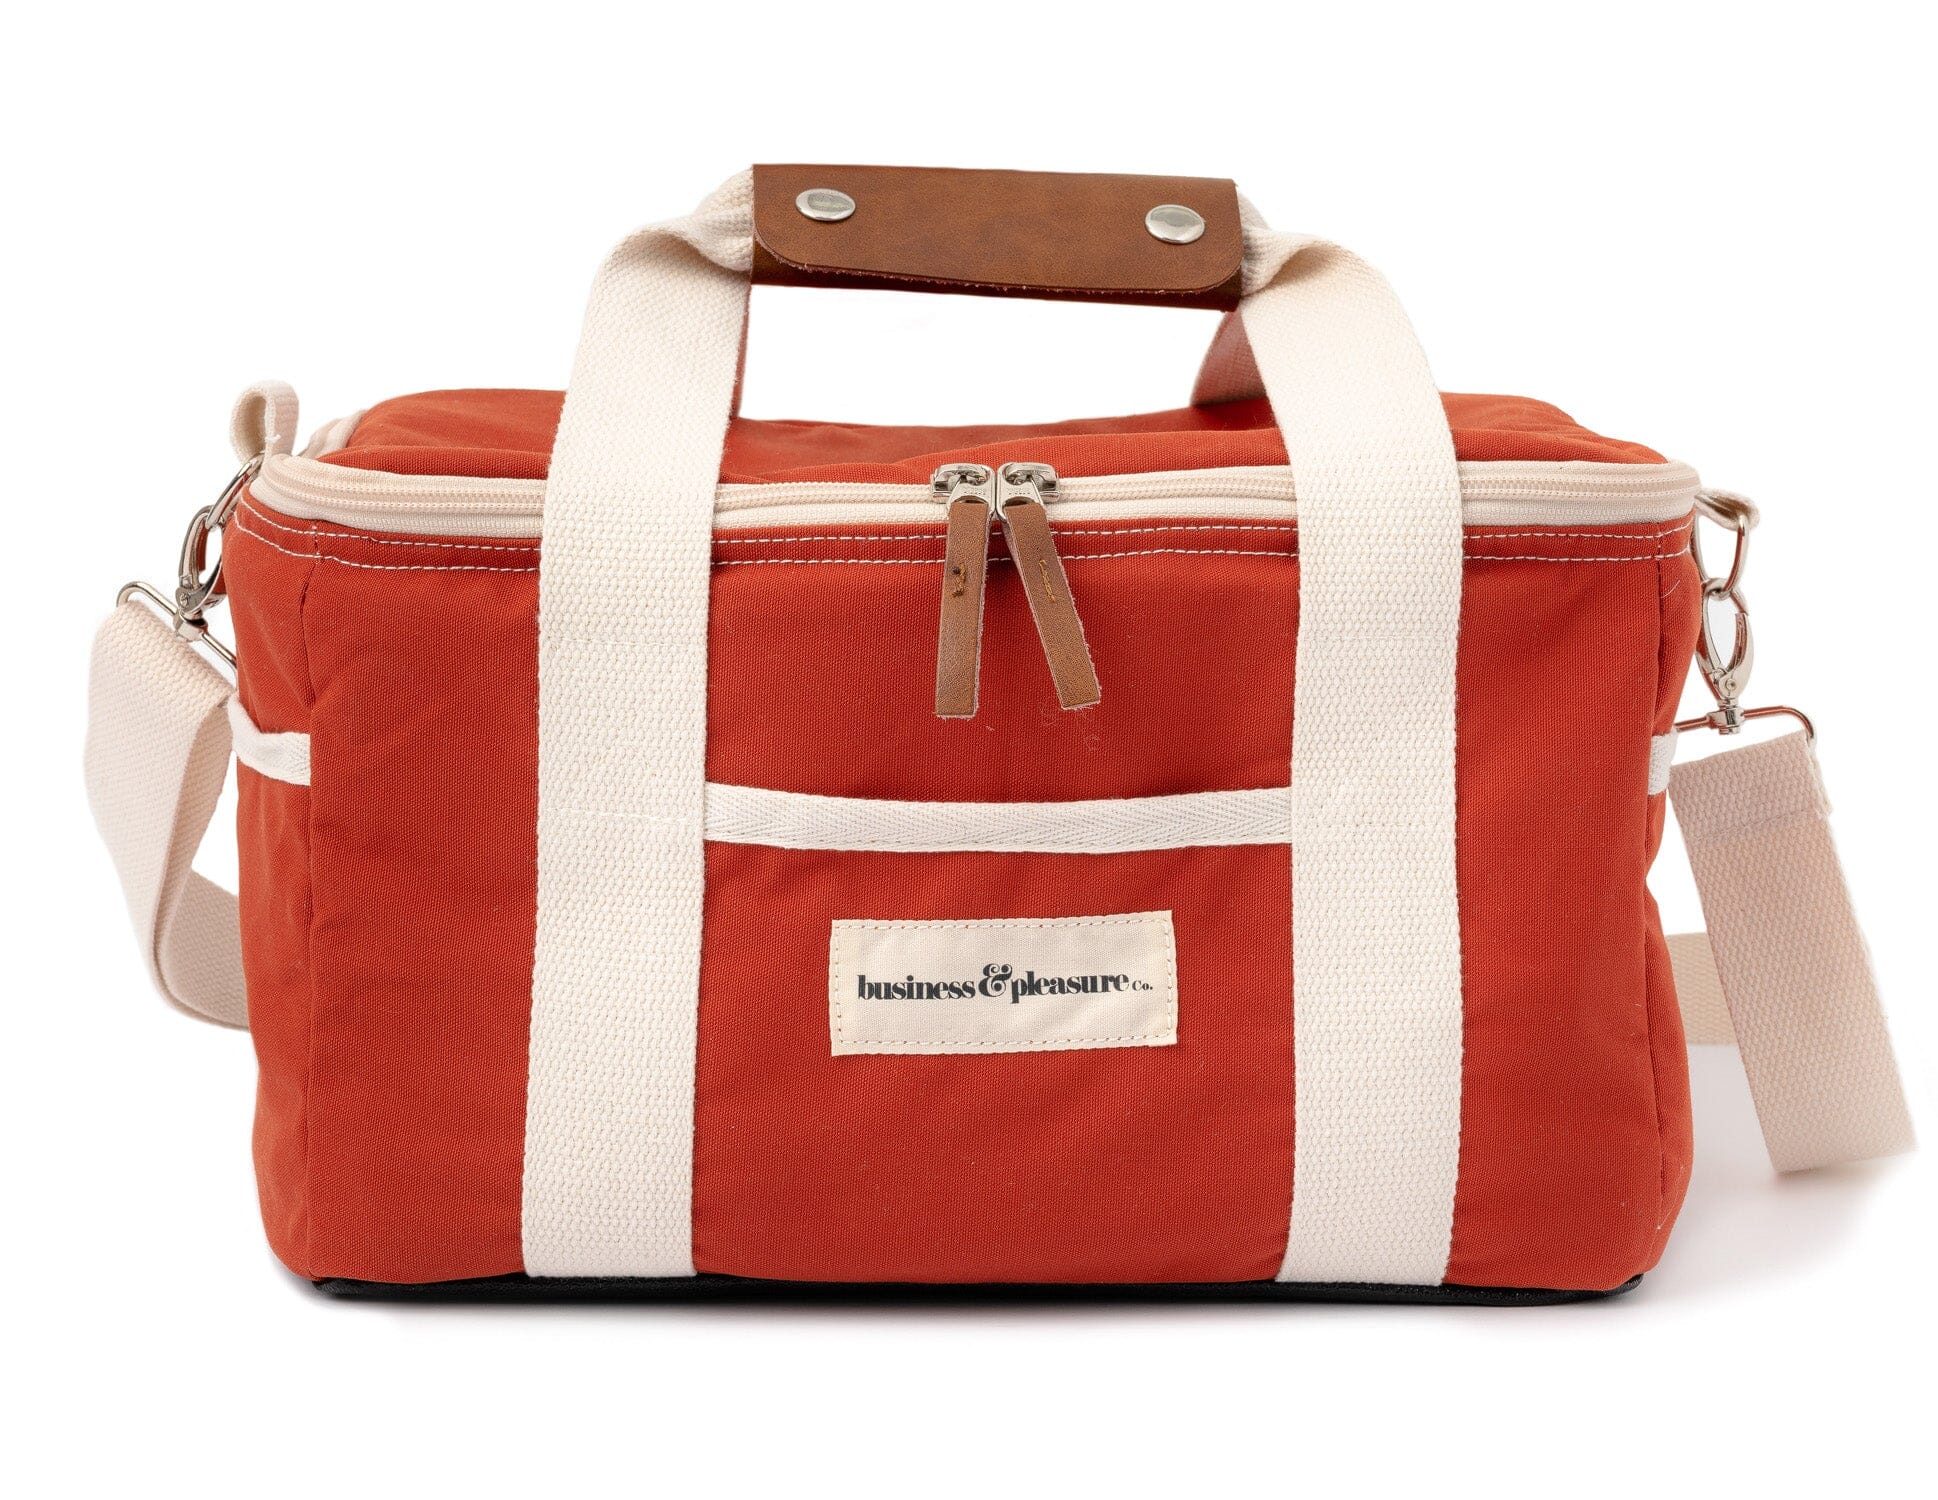 The Premium Cooler Bag - Le Sirenuse Premium Cooler Business & Pleasure Co 